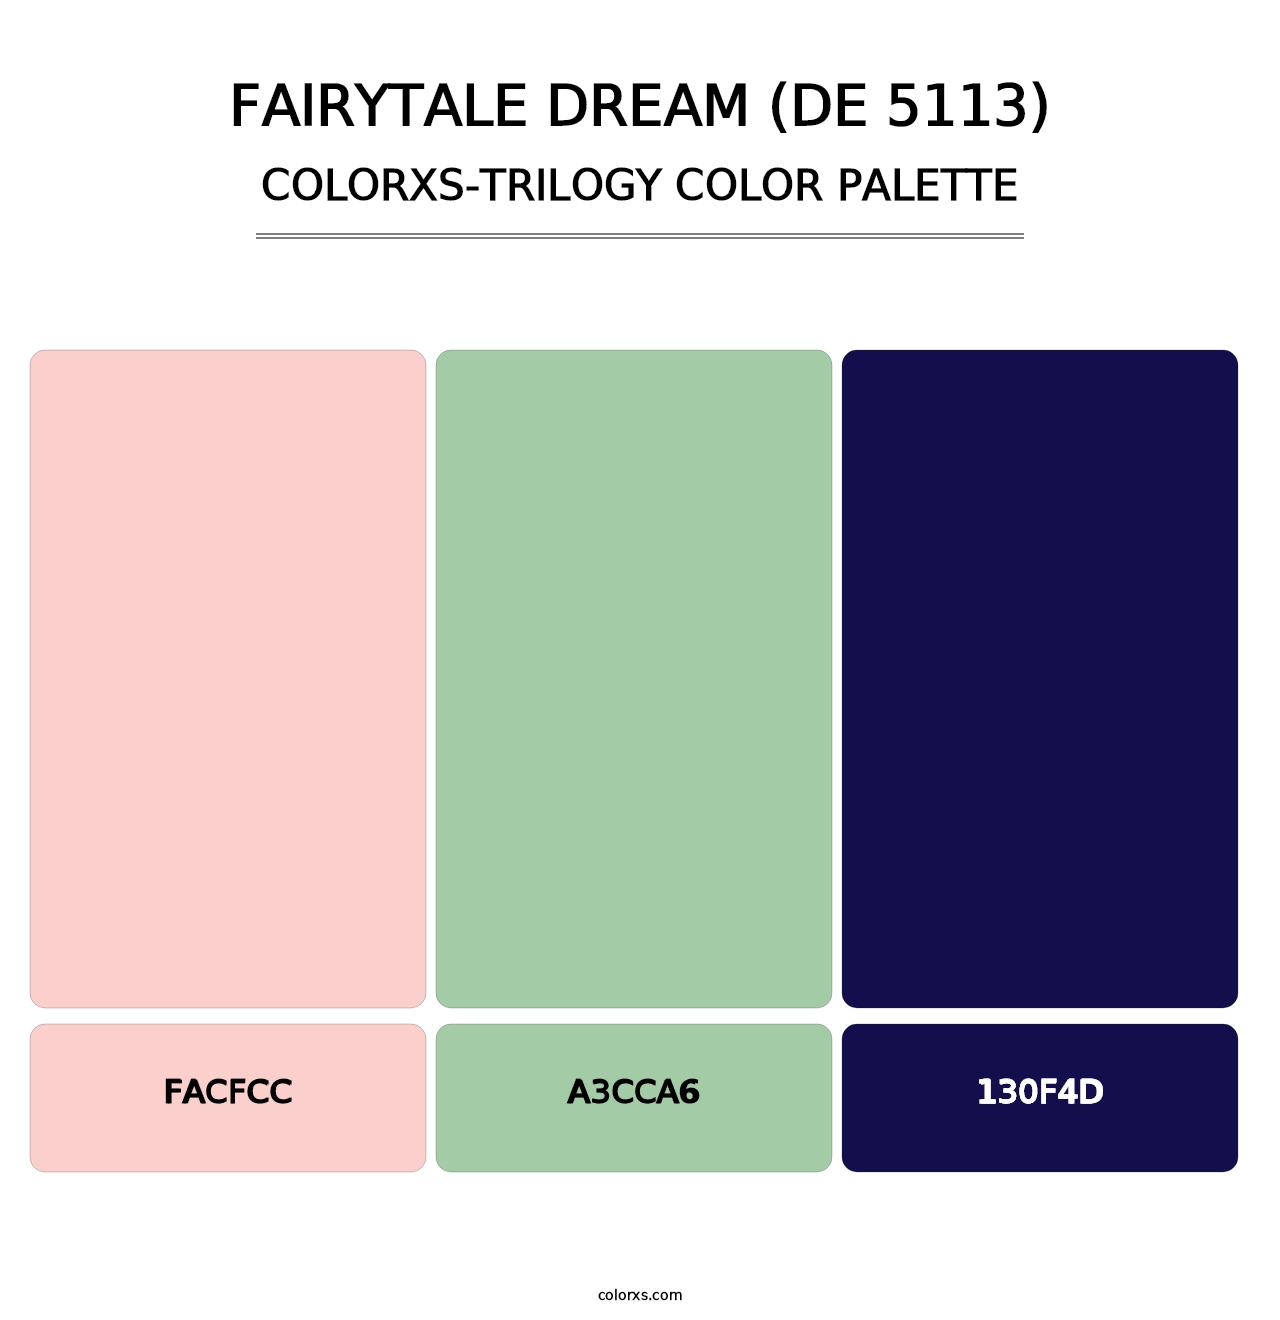 Fairytale Dream (DE 5113) - Colorxs Trilogy Palette